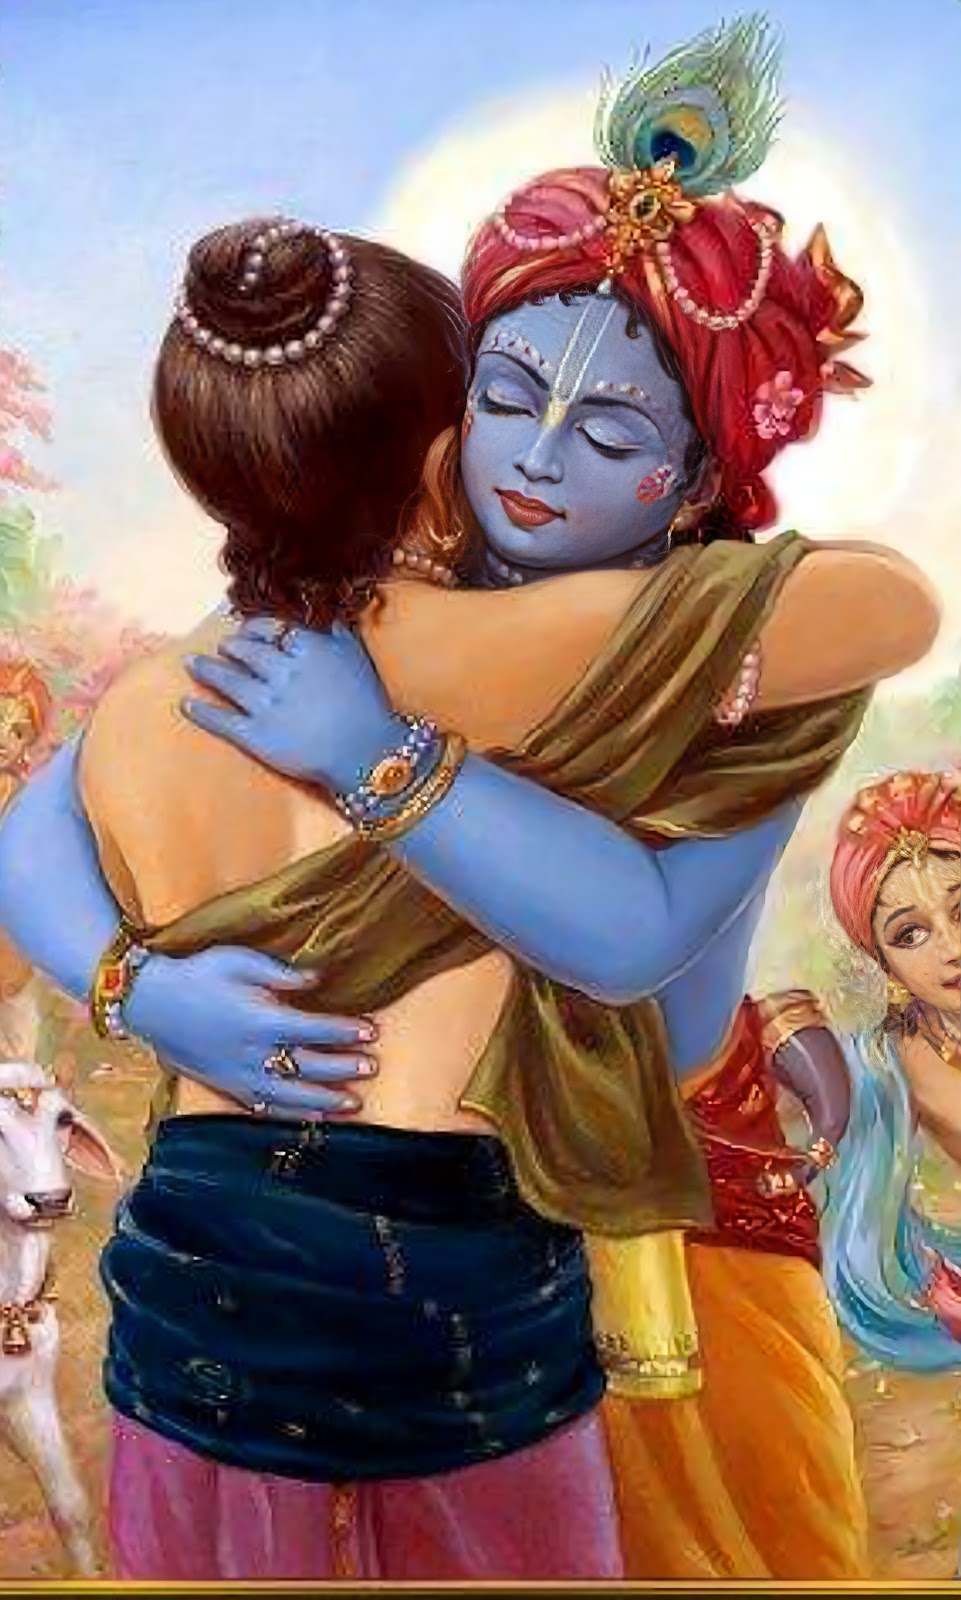 Lord Krishna hugging His devotee